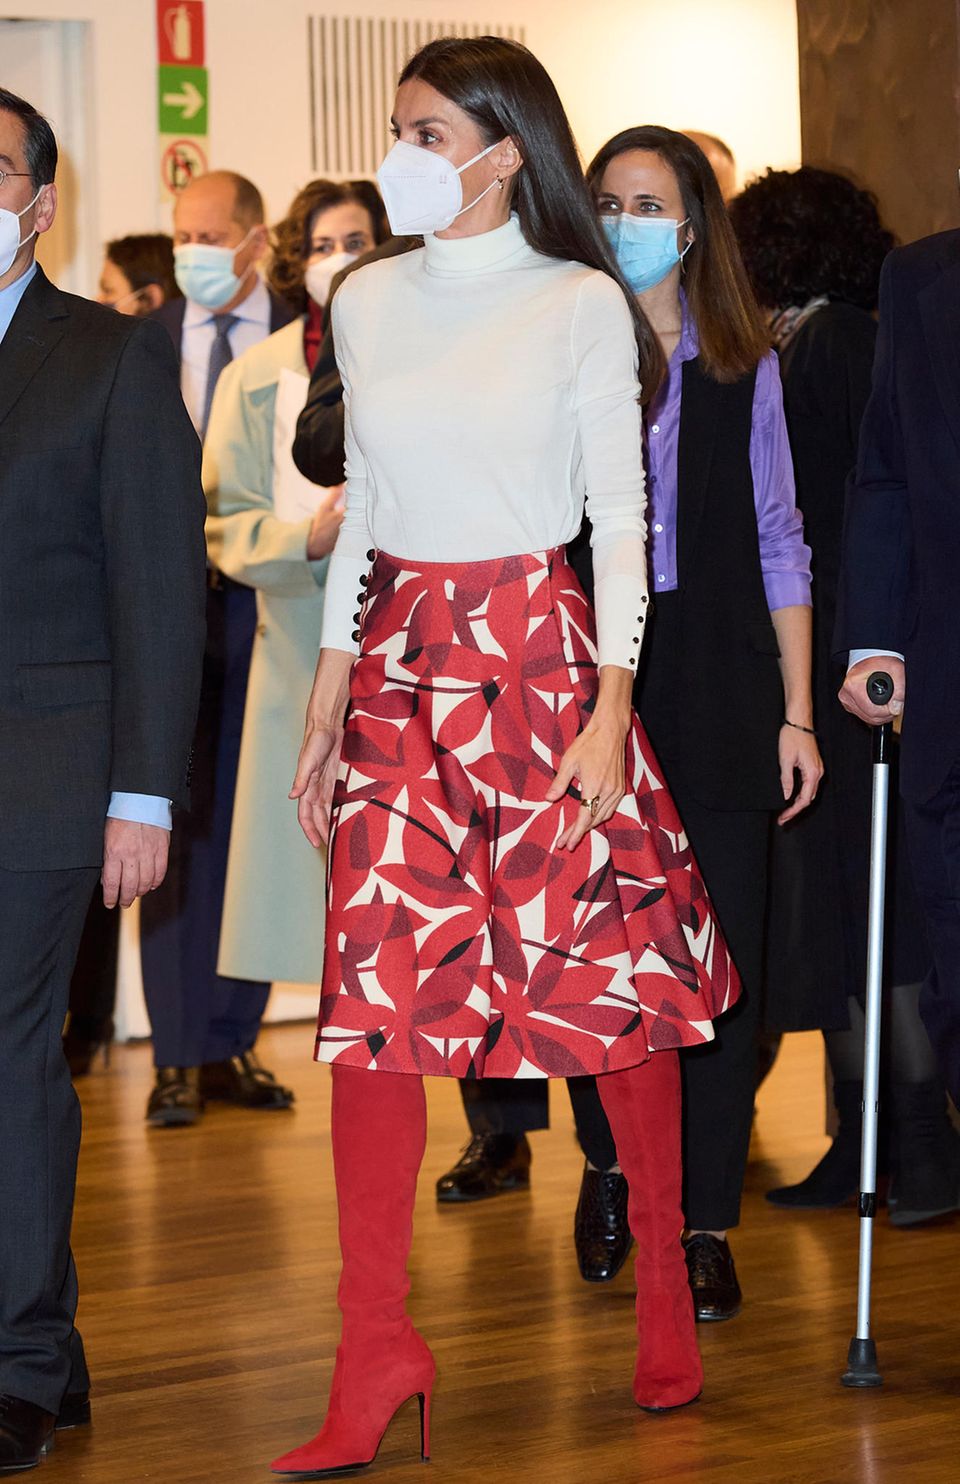 Anlässlich des 75. Jahrestages von Unicef präsentiert sich Königin Letizia in Madrid in knallroten Overknee-Stiefeln von Margrit, die ein richtiger Eyecatcher sind. Dazu kombiniert sie einen langen Rock mit Blumenmuster und einen klassisch weißen Rollkragenpullover.